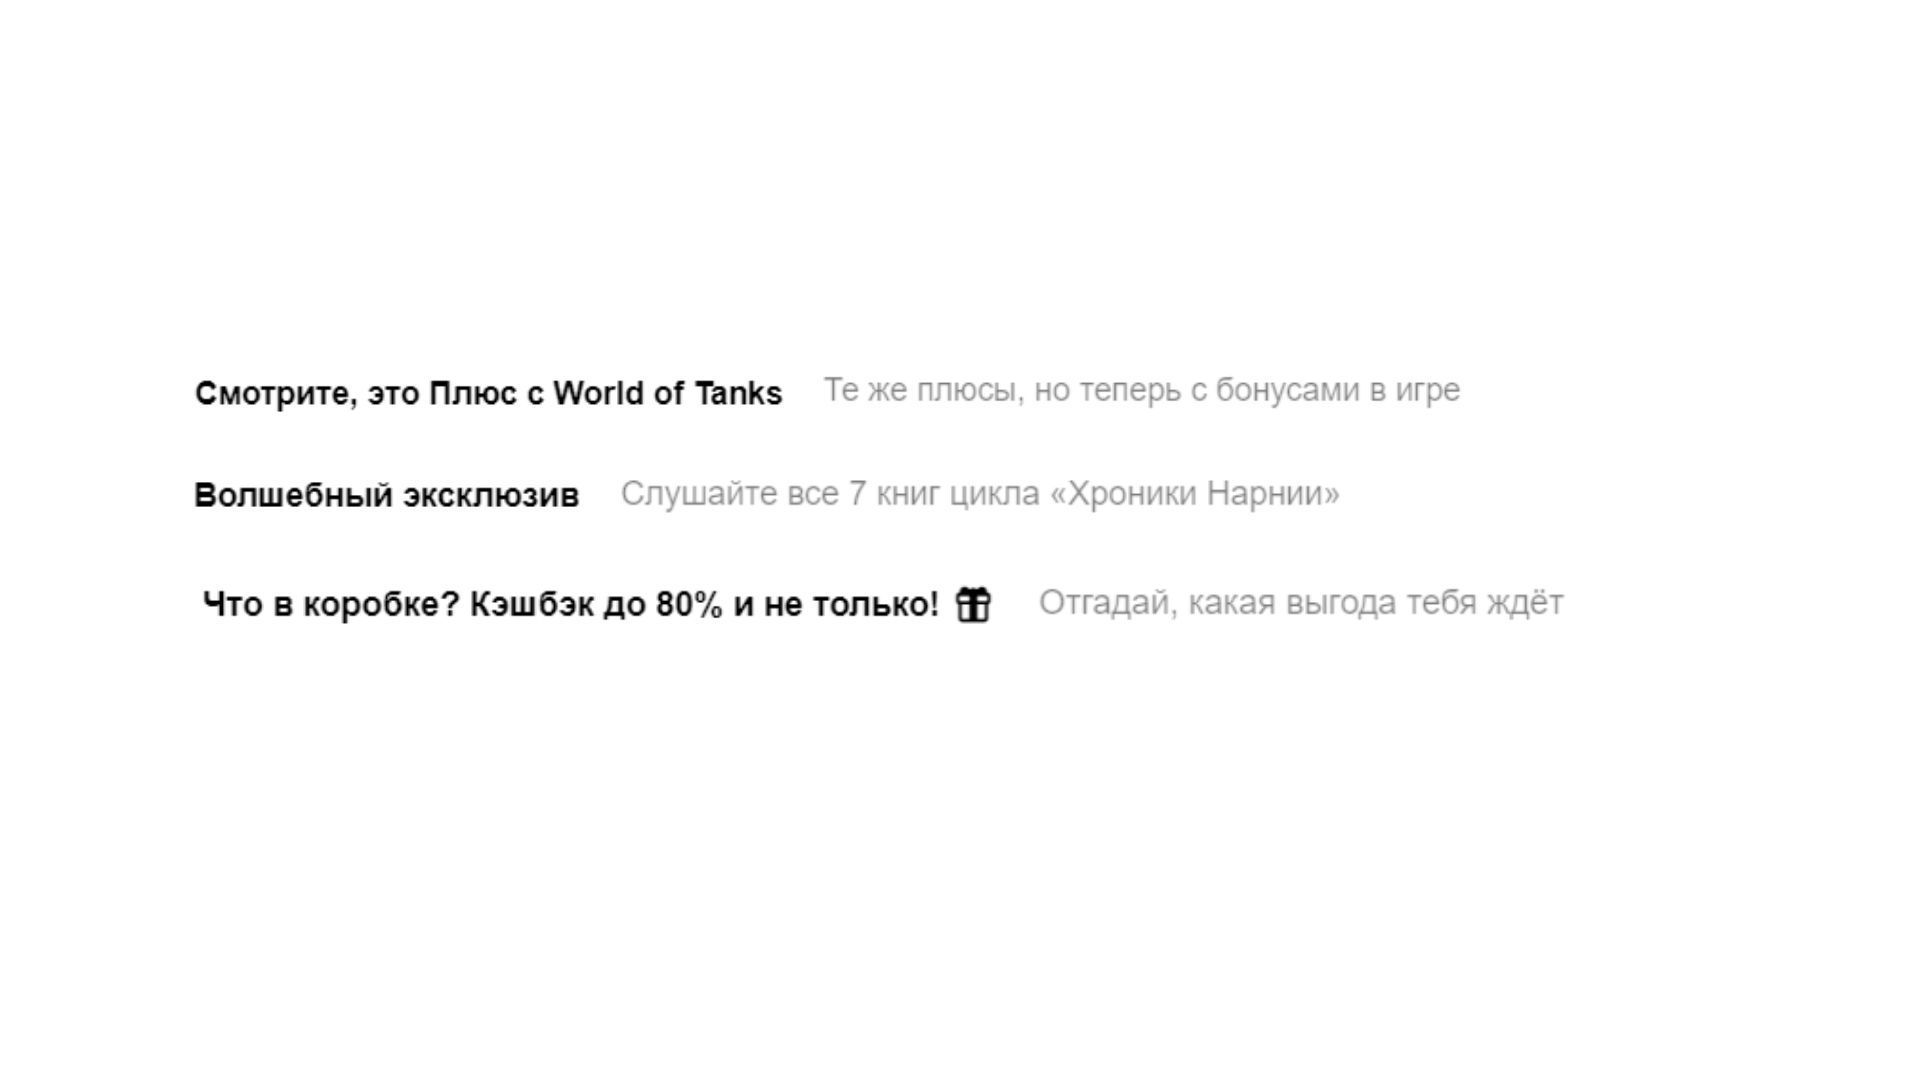 Примеры хороших превью у Яндекс.Музыки, Яндекс.Плюса и М.Видео